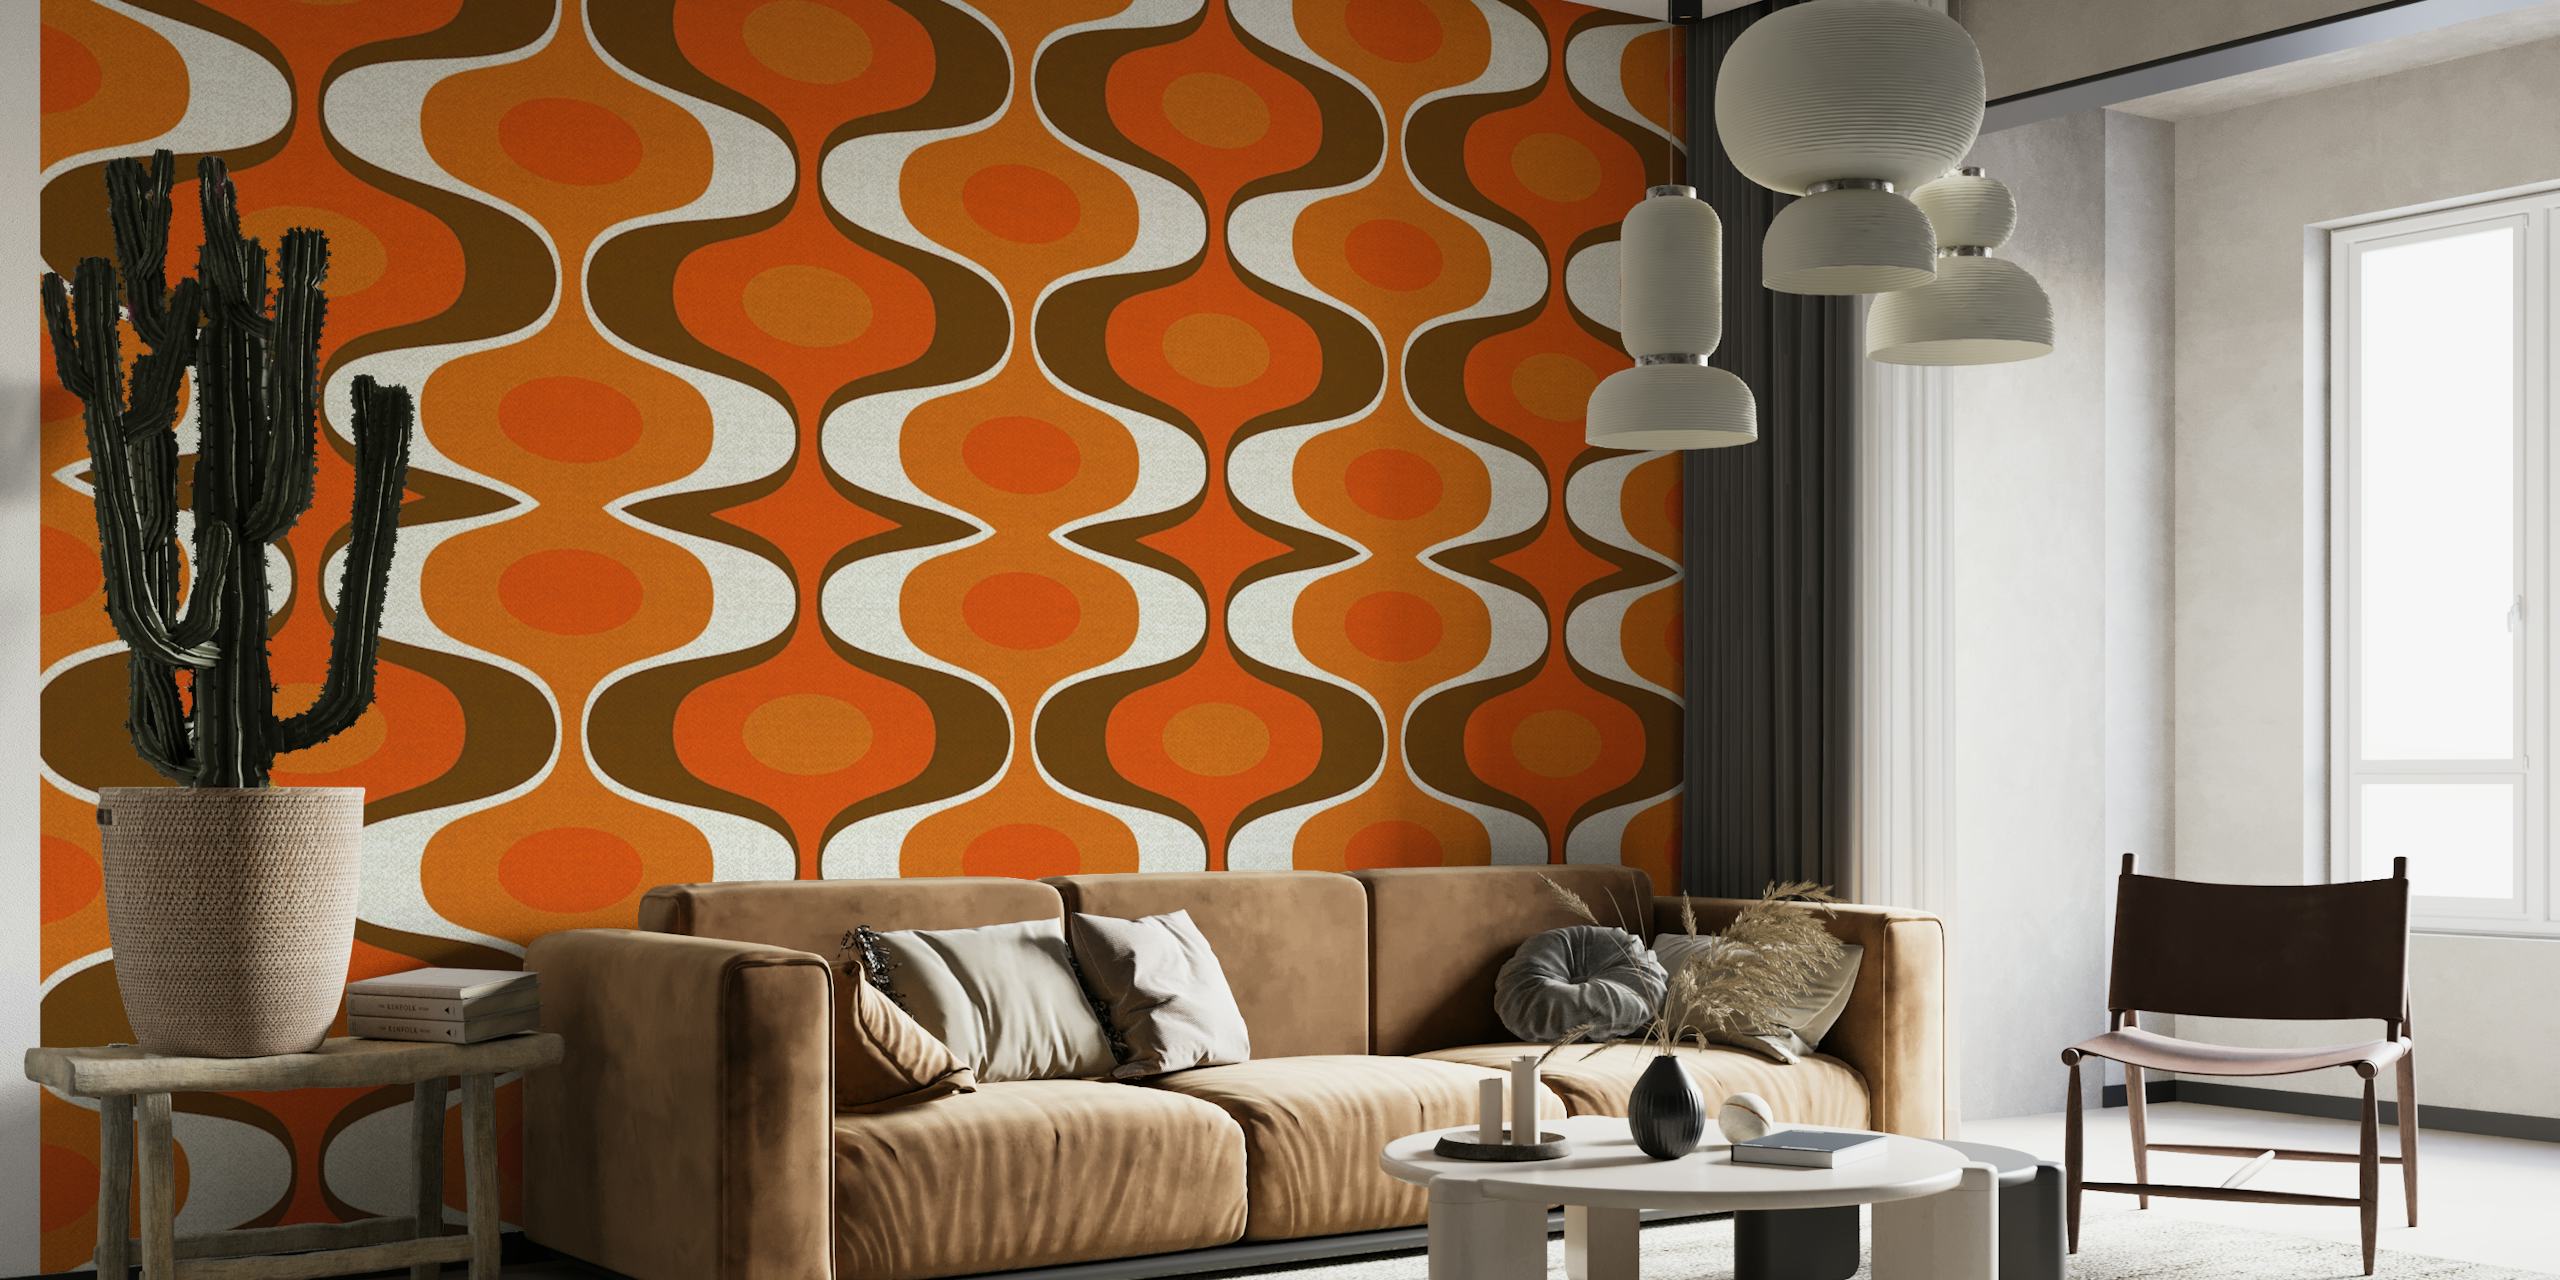 Vintage-geïnspireerde muurschildering met een retro groovy patroon uit de jaren 70 in oranje en bruine kleuren.